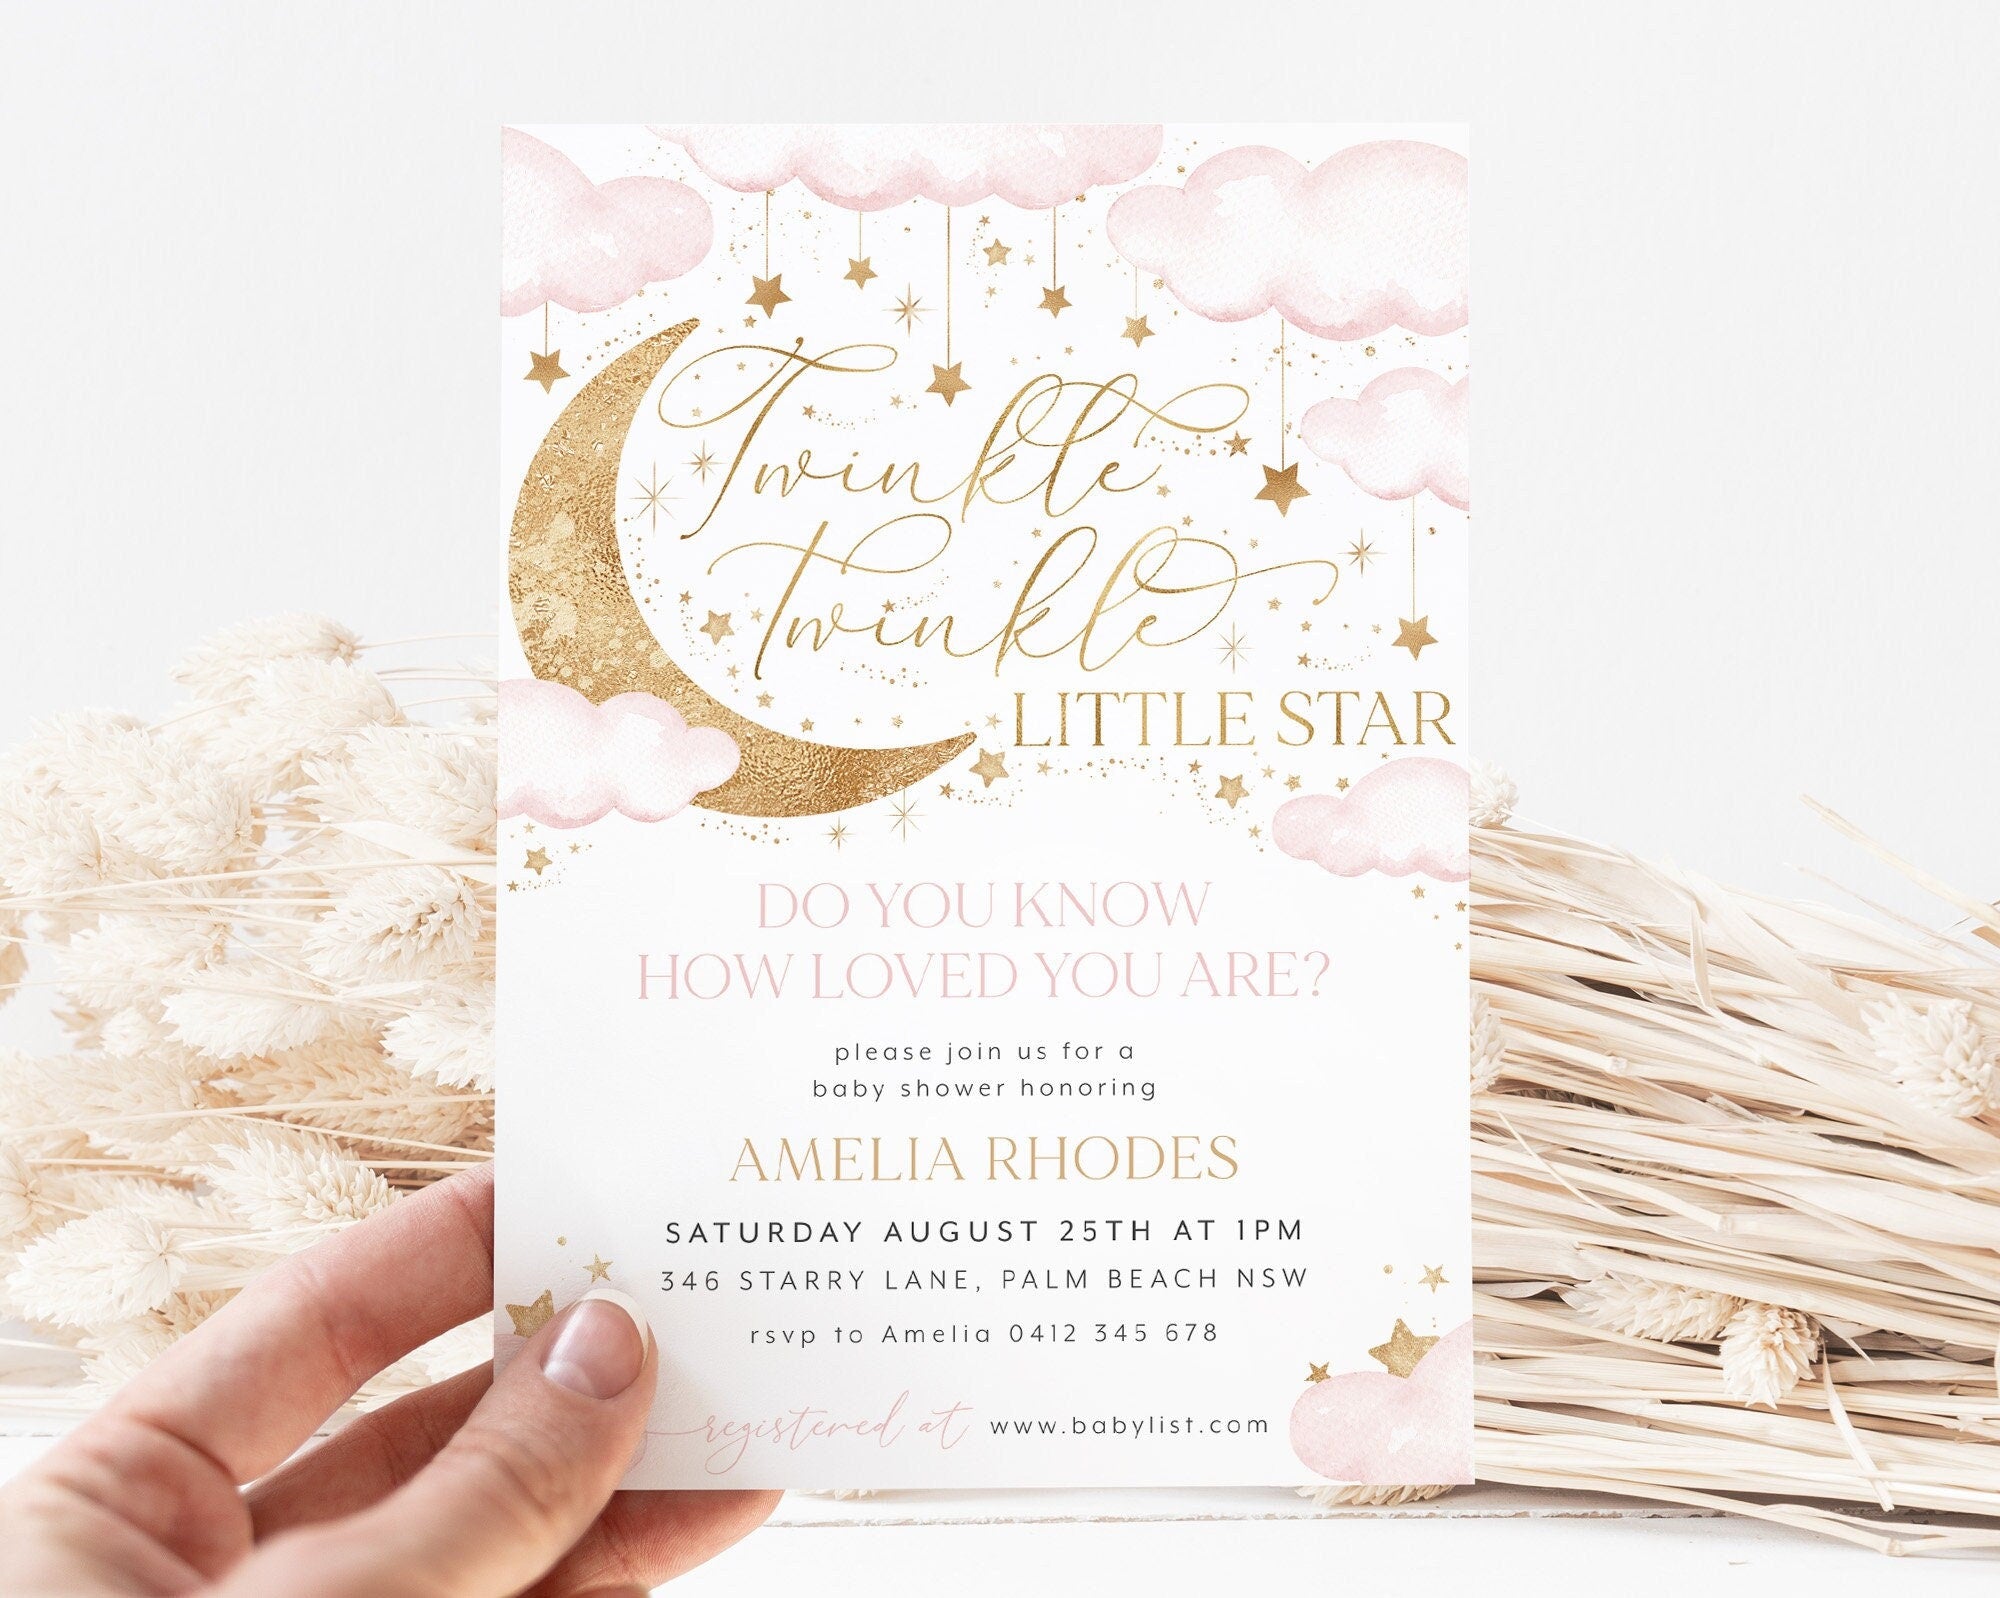 Twinkle Twinkle Little Star Invitation, Baby Shower Invitation, Girl Baby Shower Instant Download Template, Little Star Pink Invitation Girl